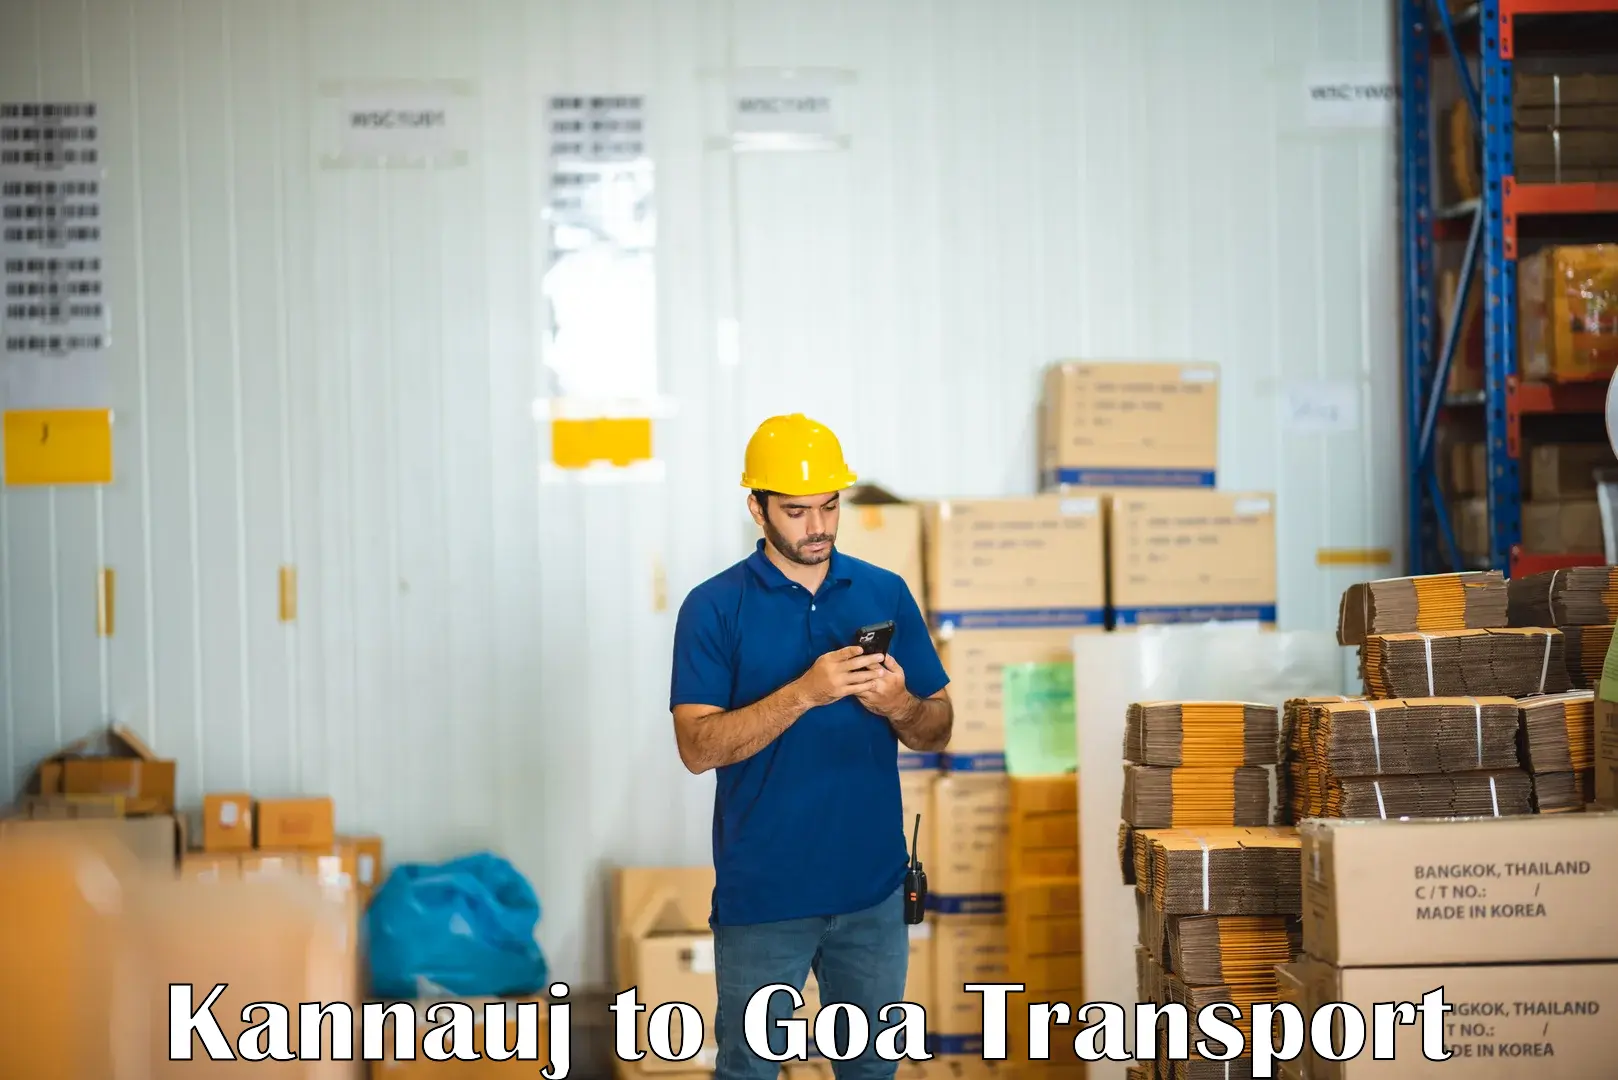 Nearest transport service Kannauj to NIT Goa